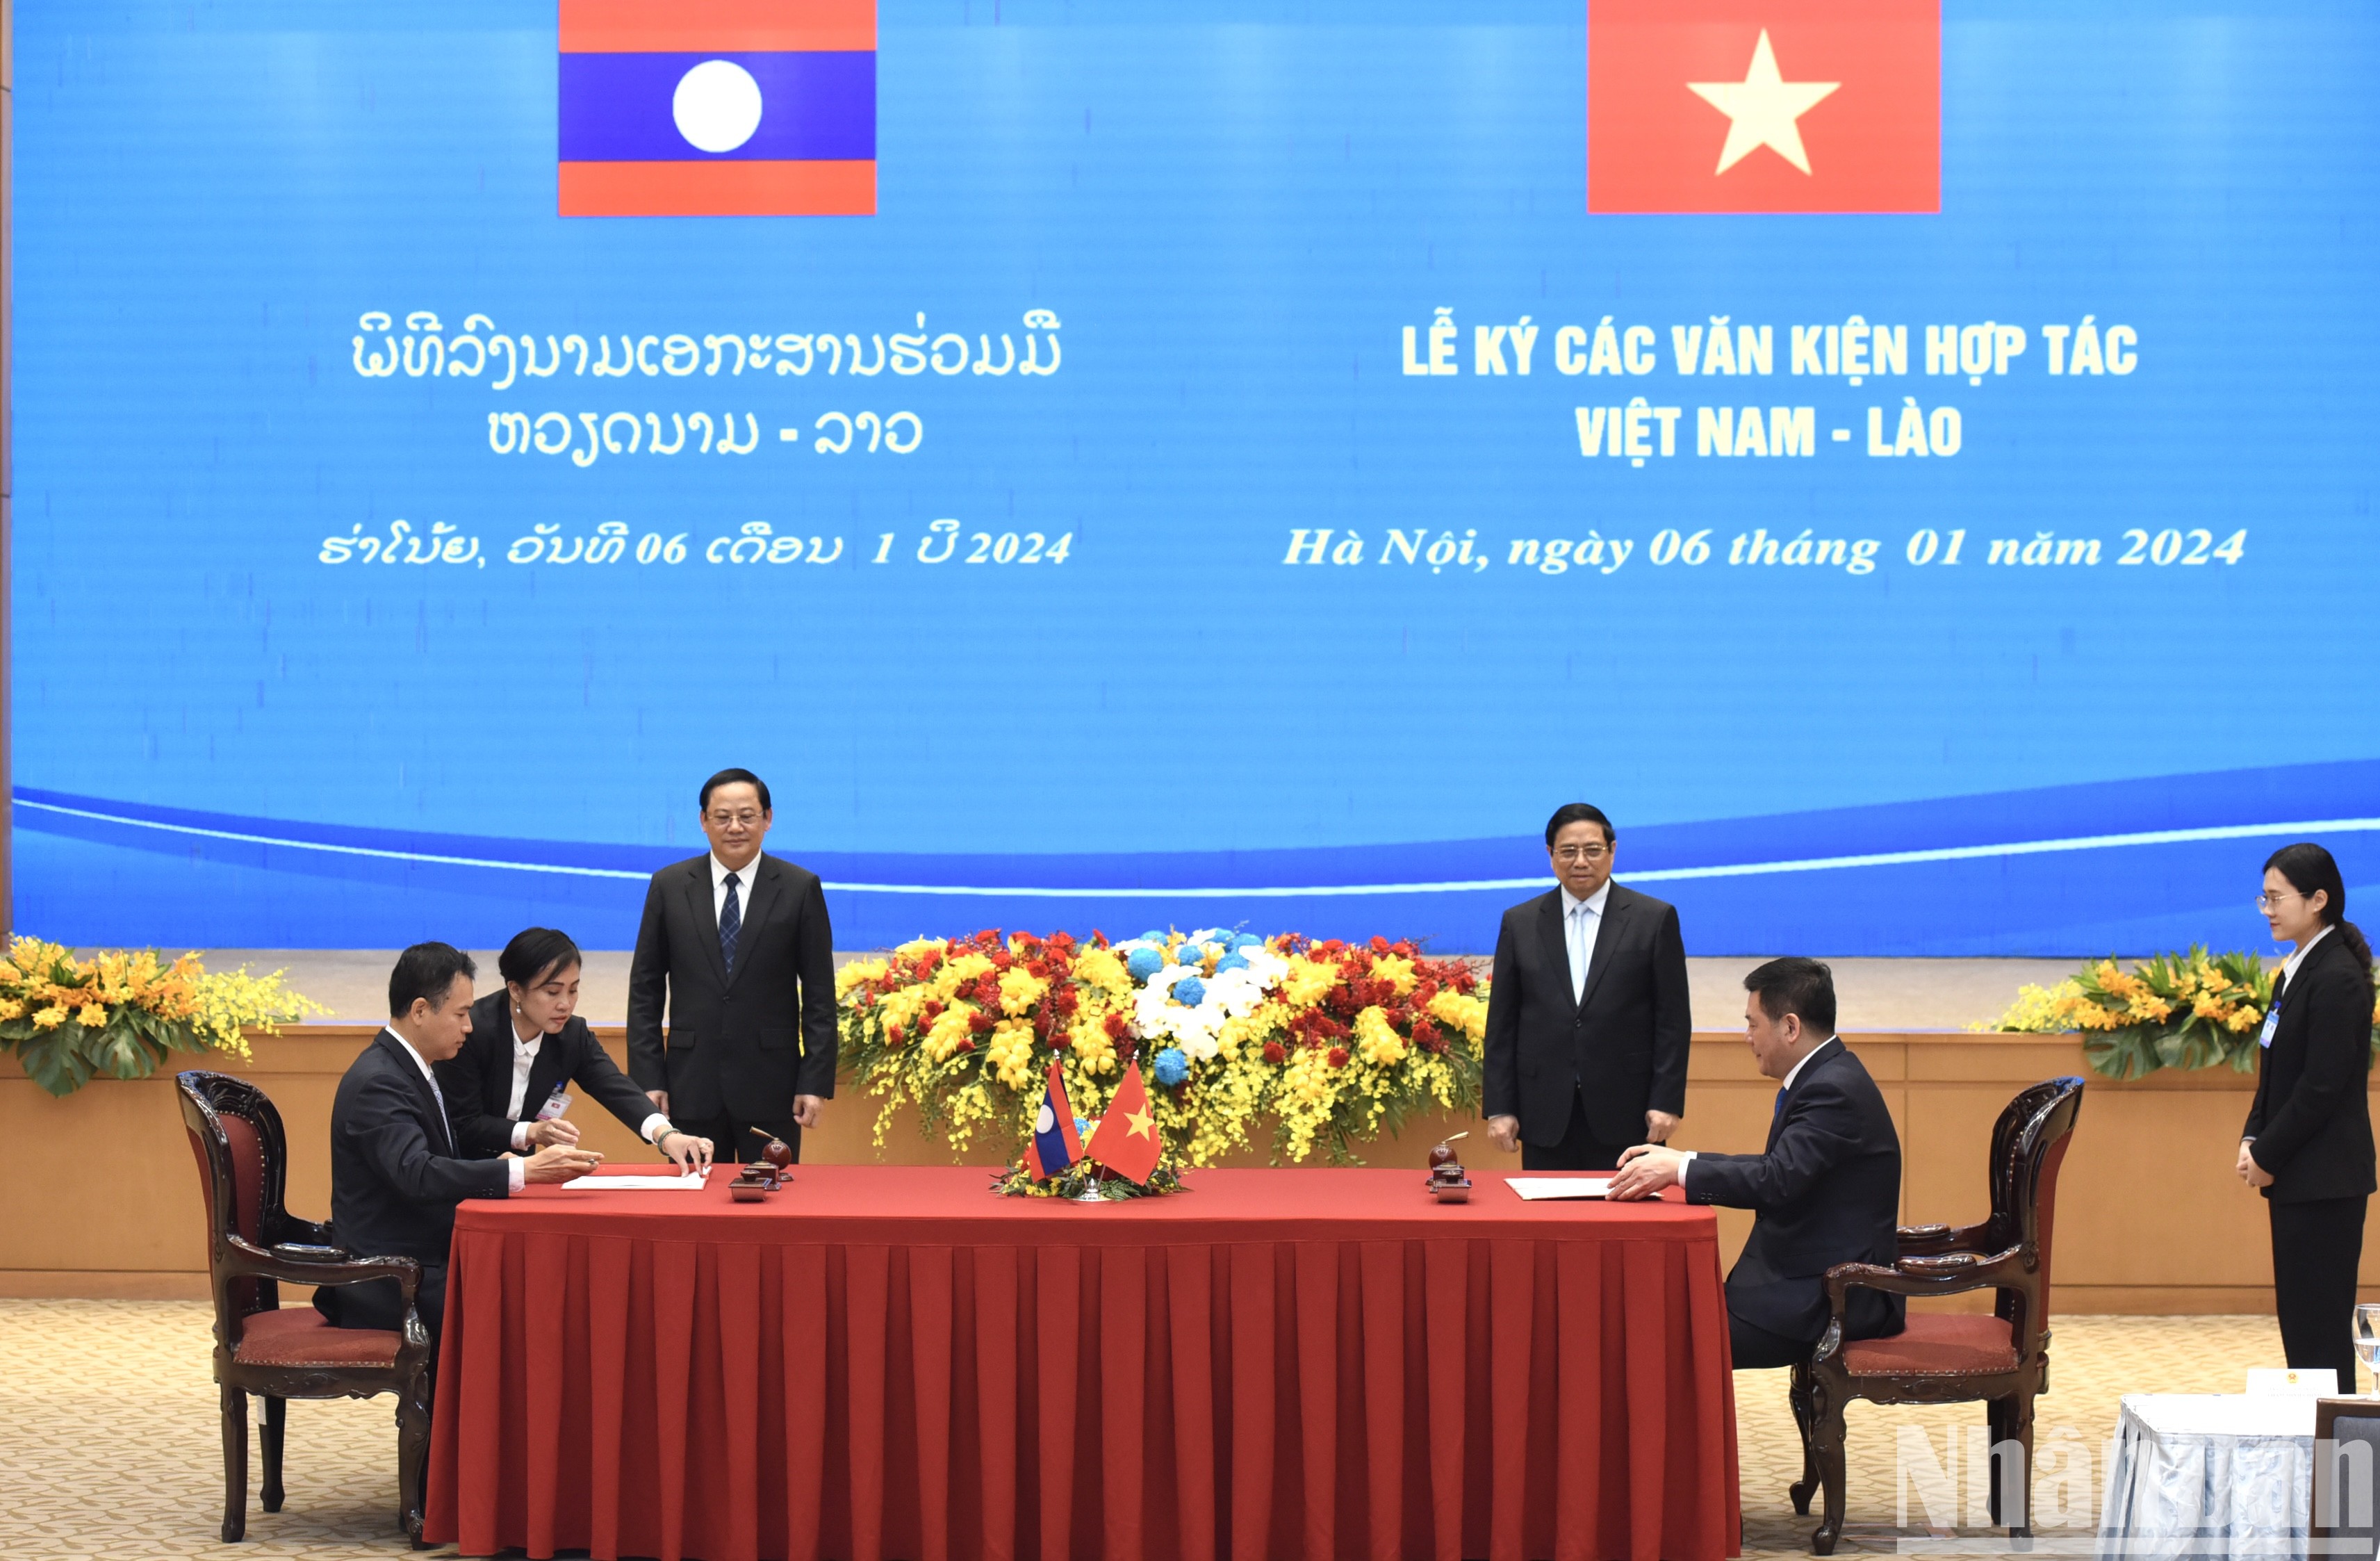 双方签署《越南社会主义共和国政府和老挝人民民主共和国政府关于发展和连接两国边境贸易基础设施谅解备忘录》。